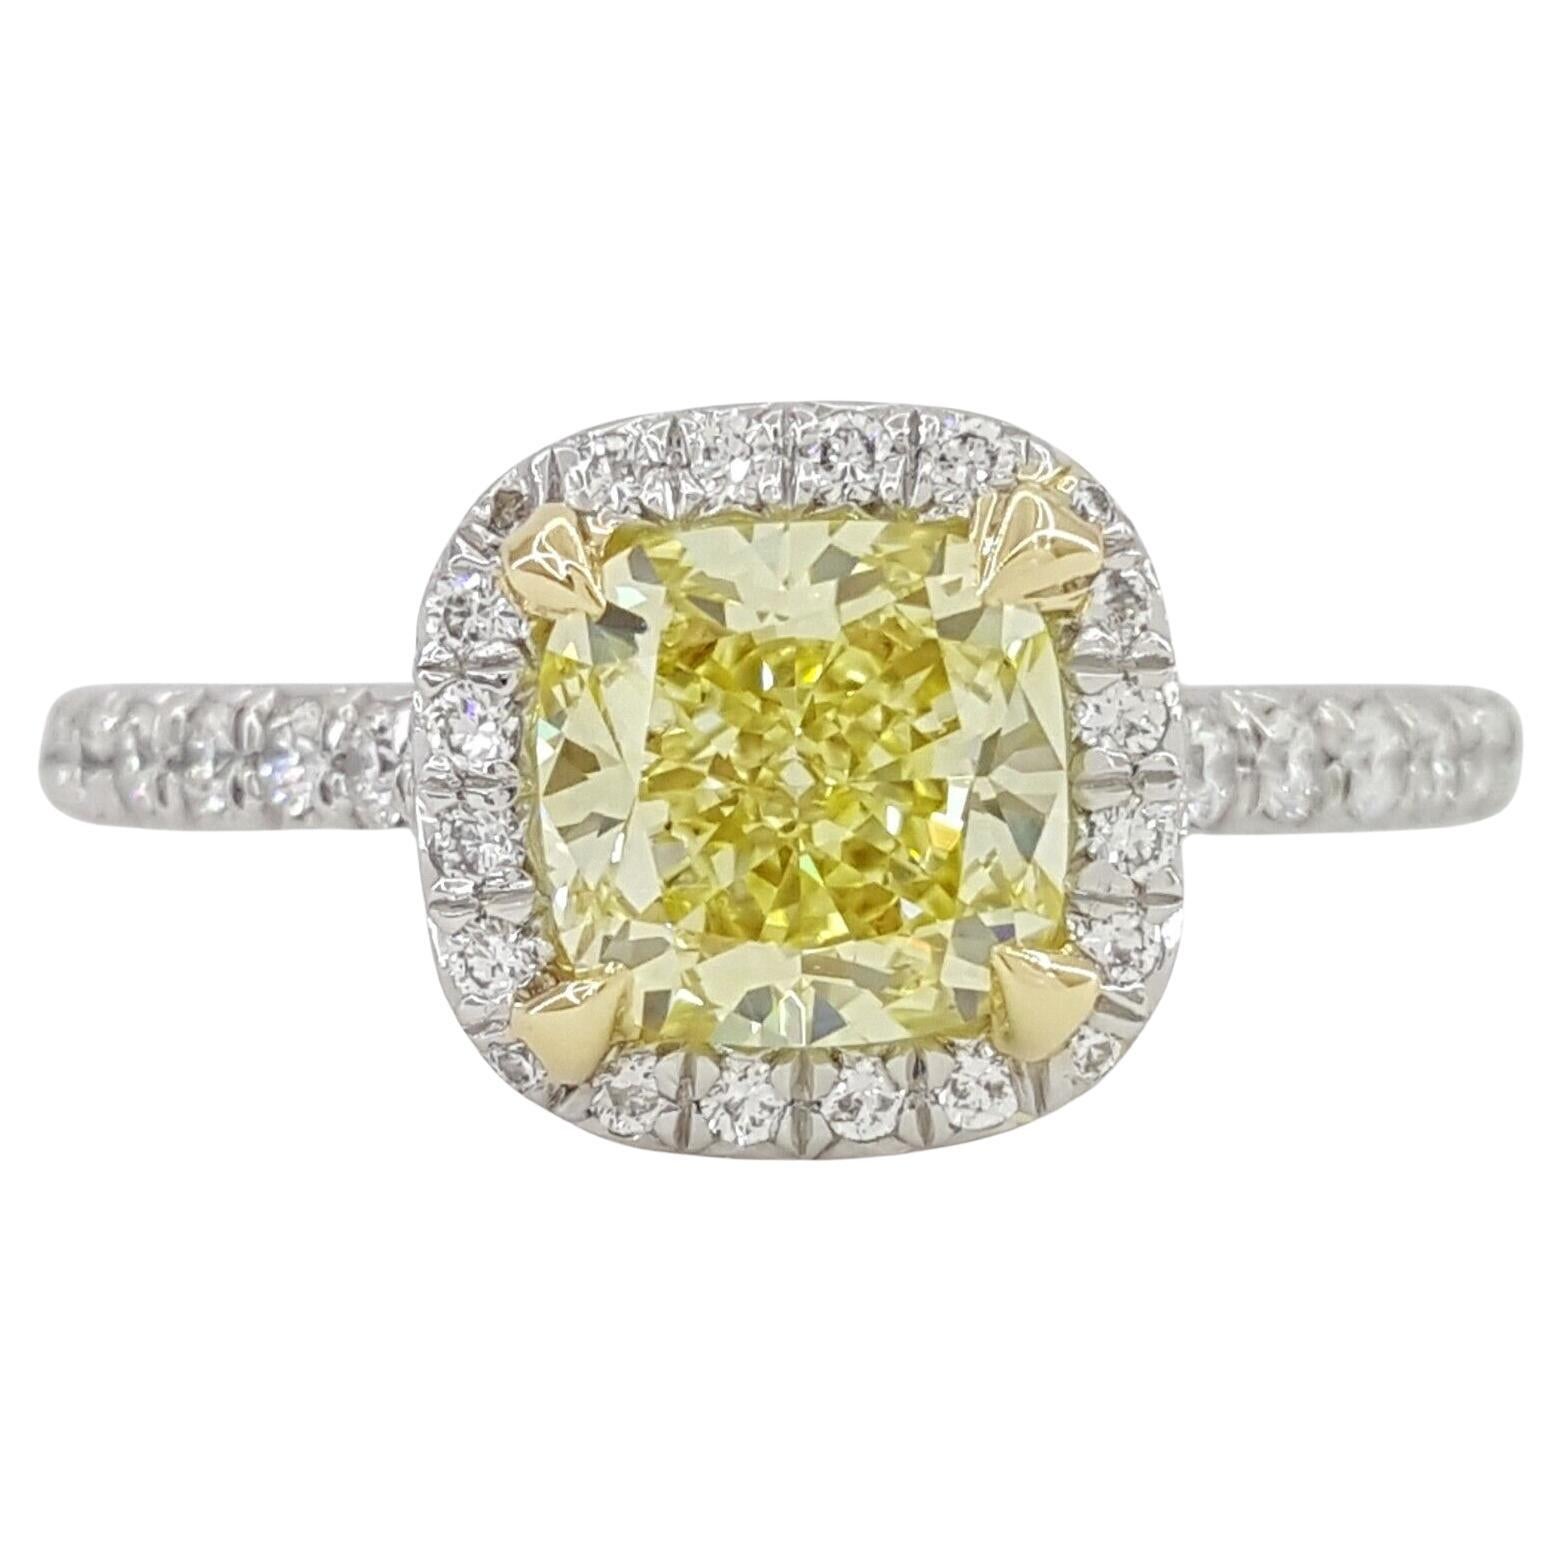 Tiffany & Co. Soleste Fancy Yellow Cushion Brilliant Cut Diamond Ring